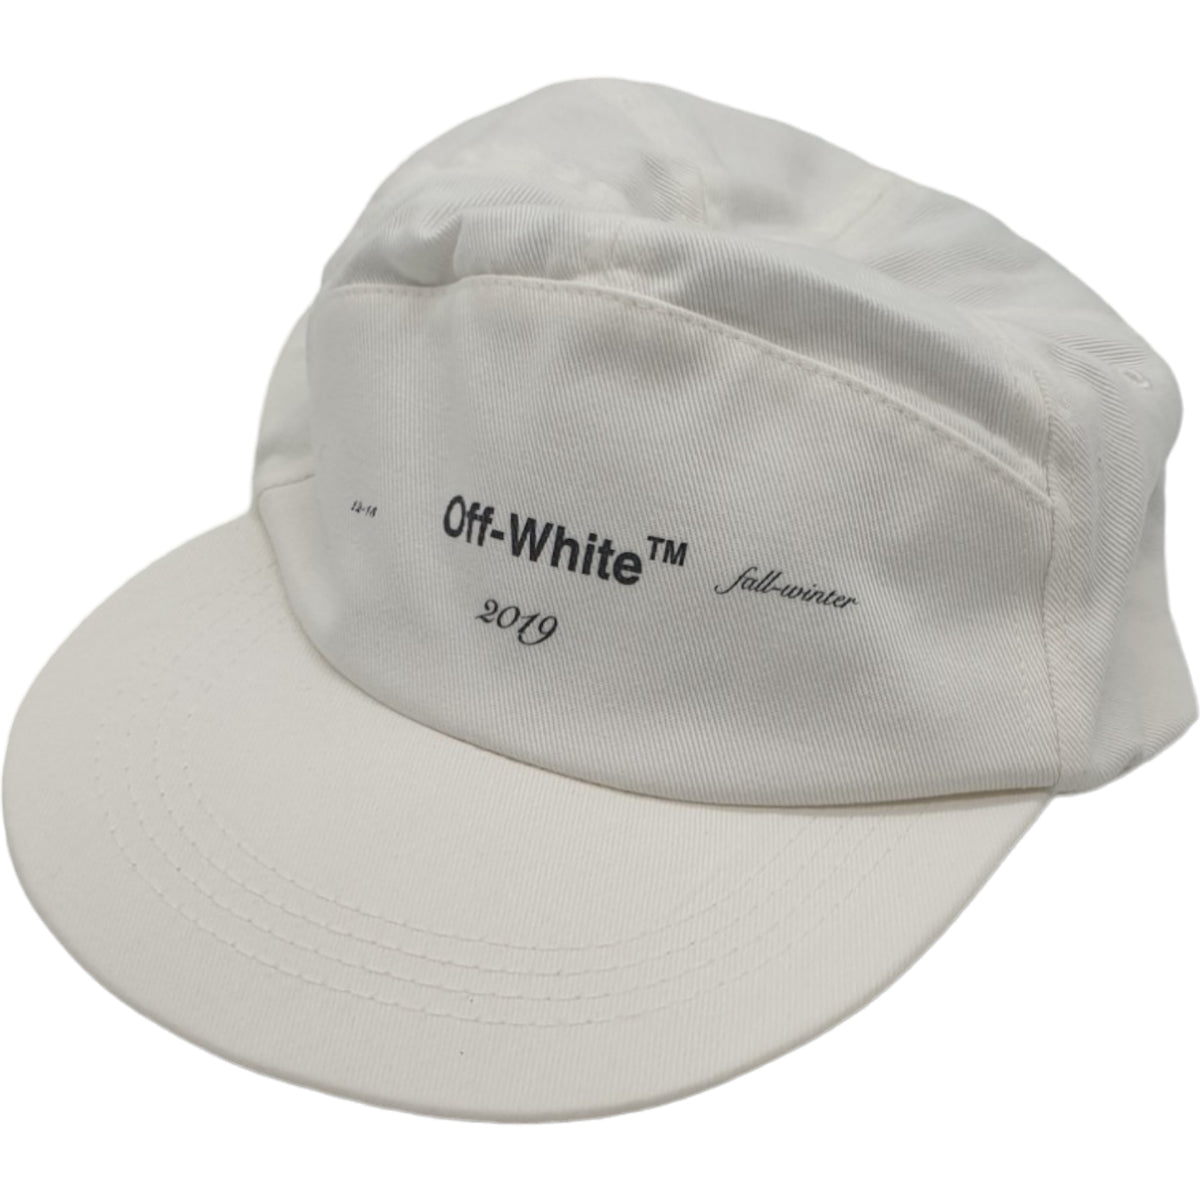 Off-White - Virgil Abloh White Snapback Logo Cap